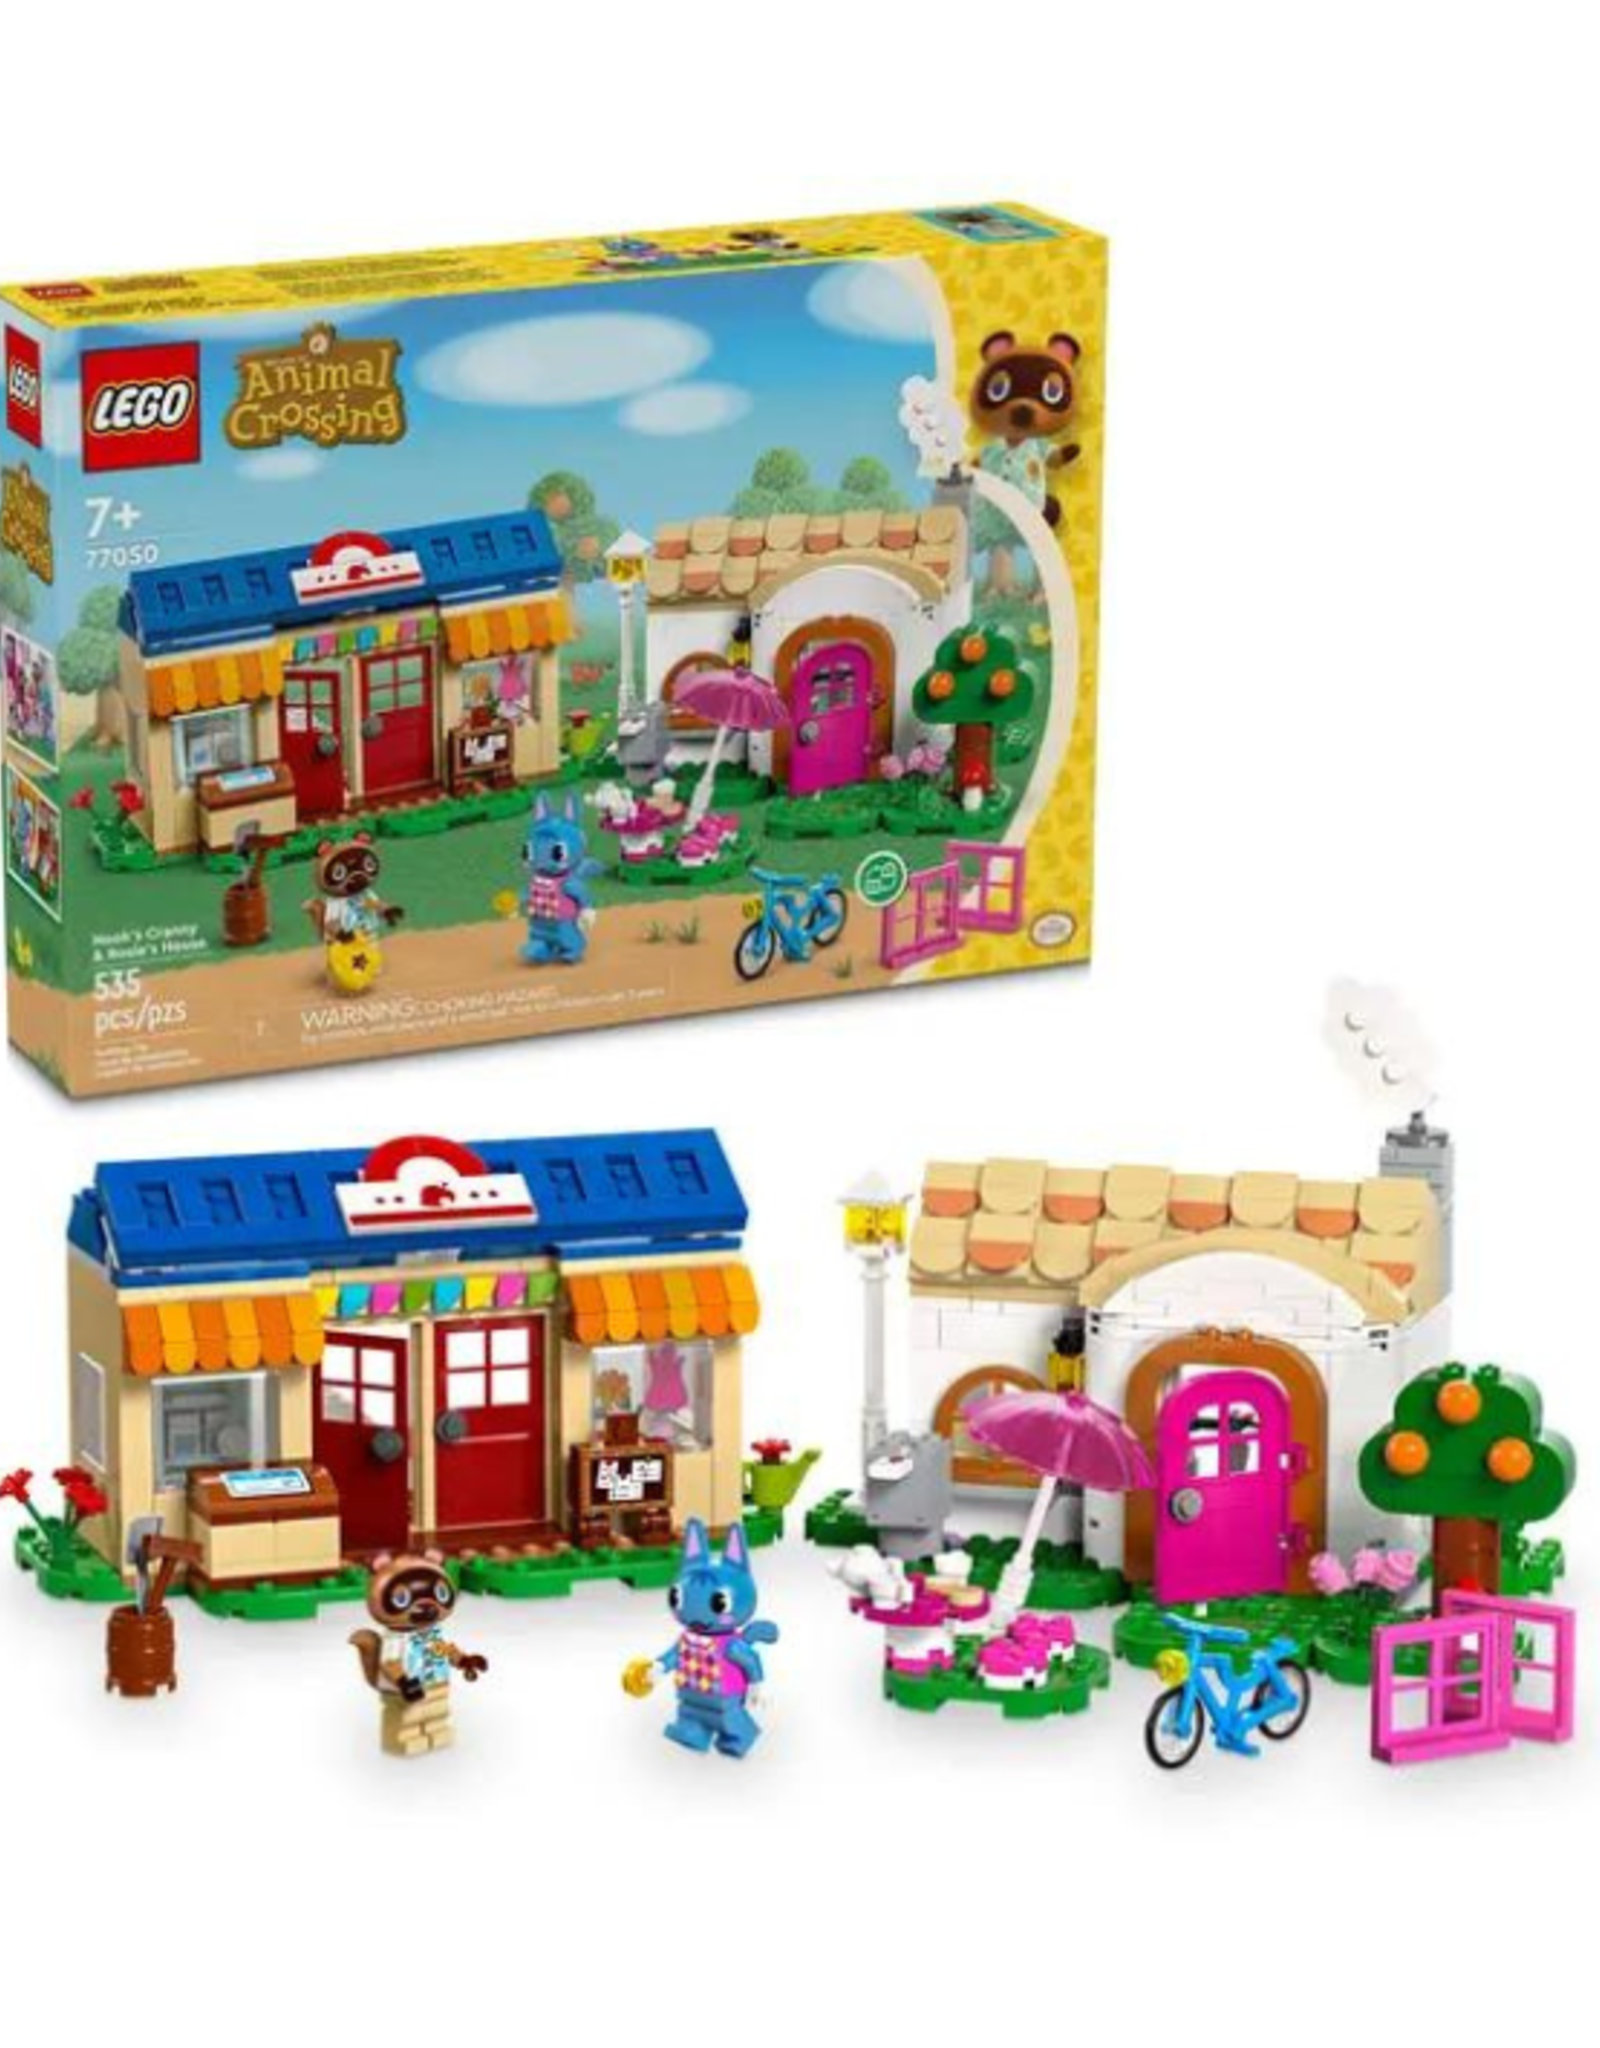 Lego Lego - Animal Crossing - 77050 - Nook's Cranny & Rosie's House